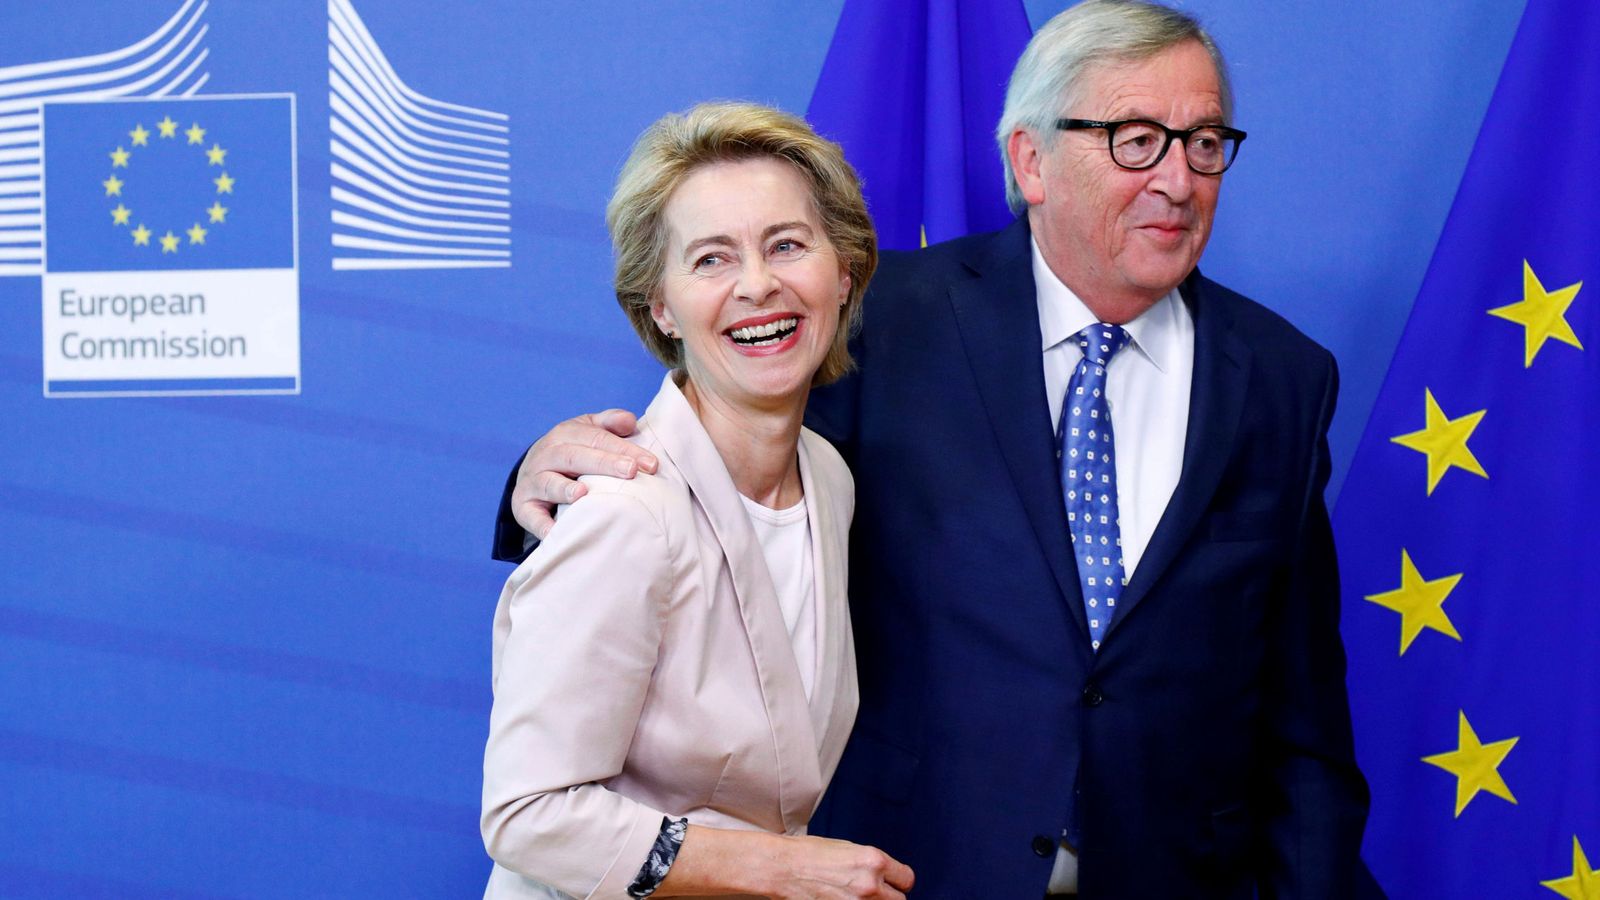 Foto: Von der Leyen junto al actual presidente de la Comisión Europea, Jean-Claude Juncker. (Reuters)